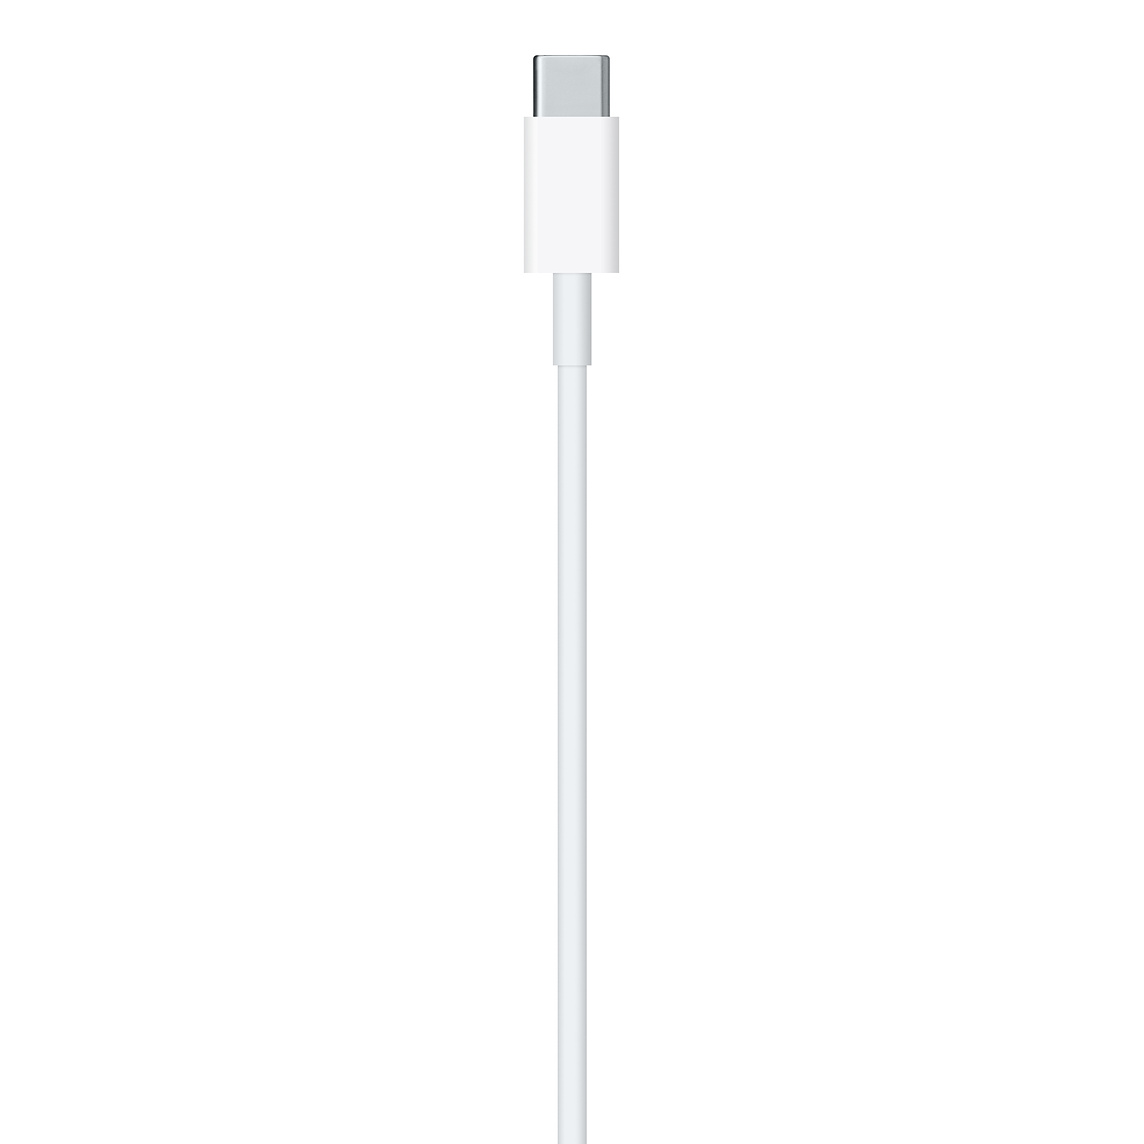 Apple USB-C to Lightning Cable (2m) - chính hãng